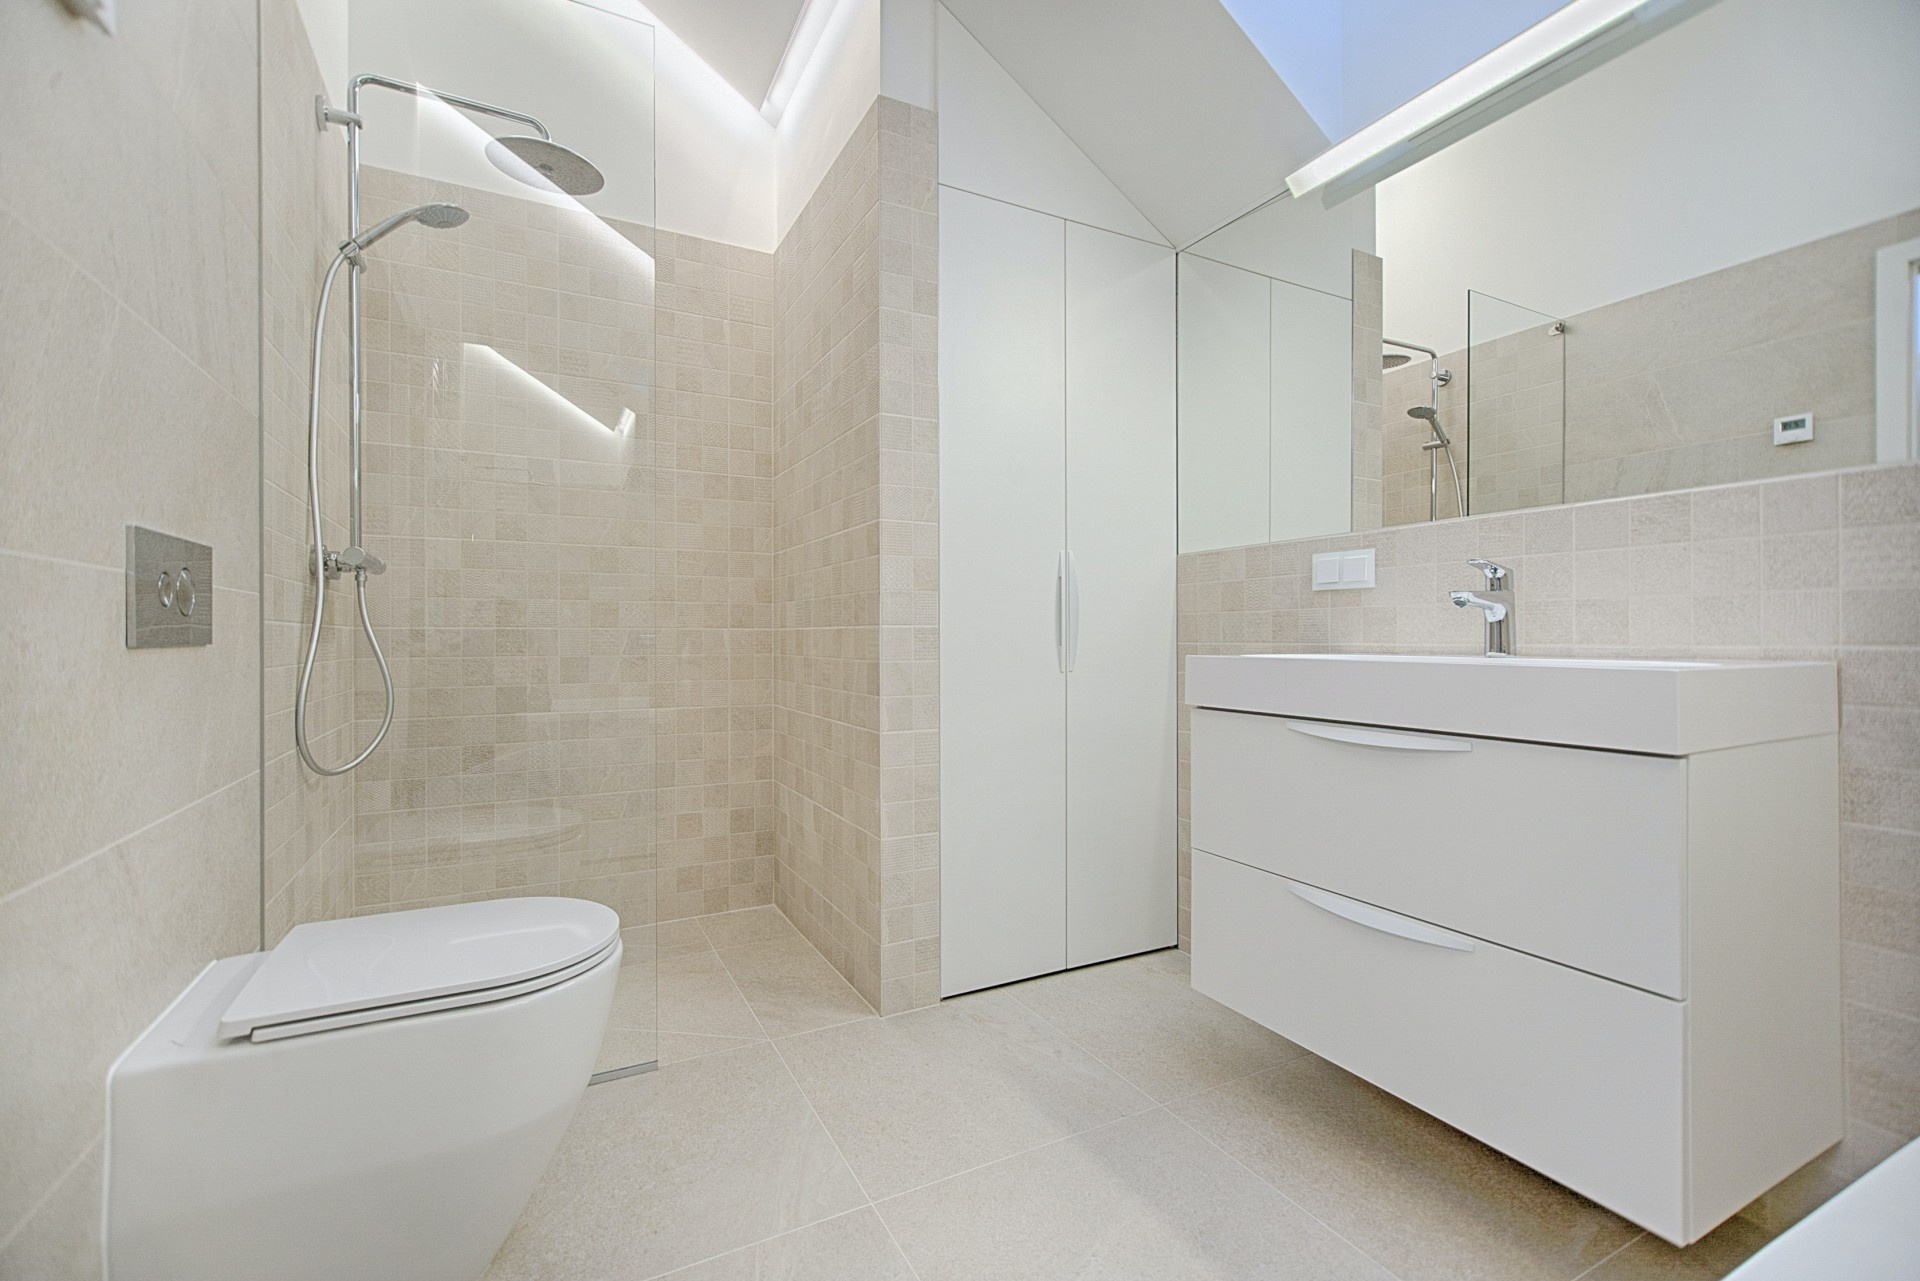 heel fijn Transparant Op en neer gaan Je badkamer stijlvol verlichten met de IP65 inbouwspot - Eurovision House